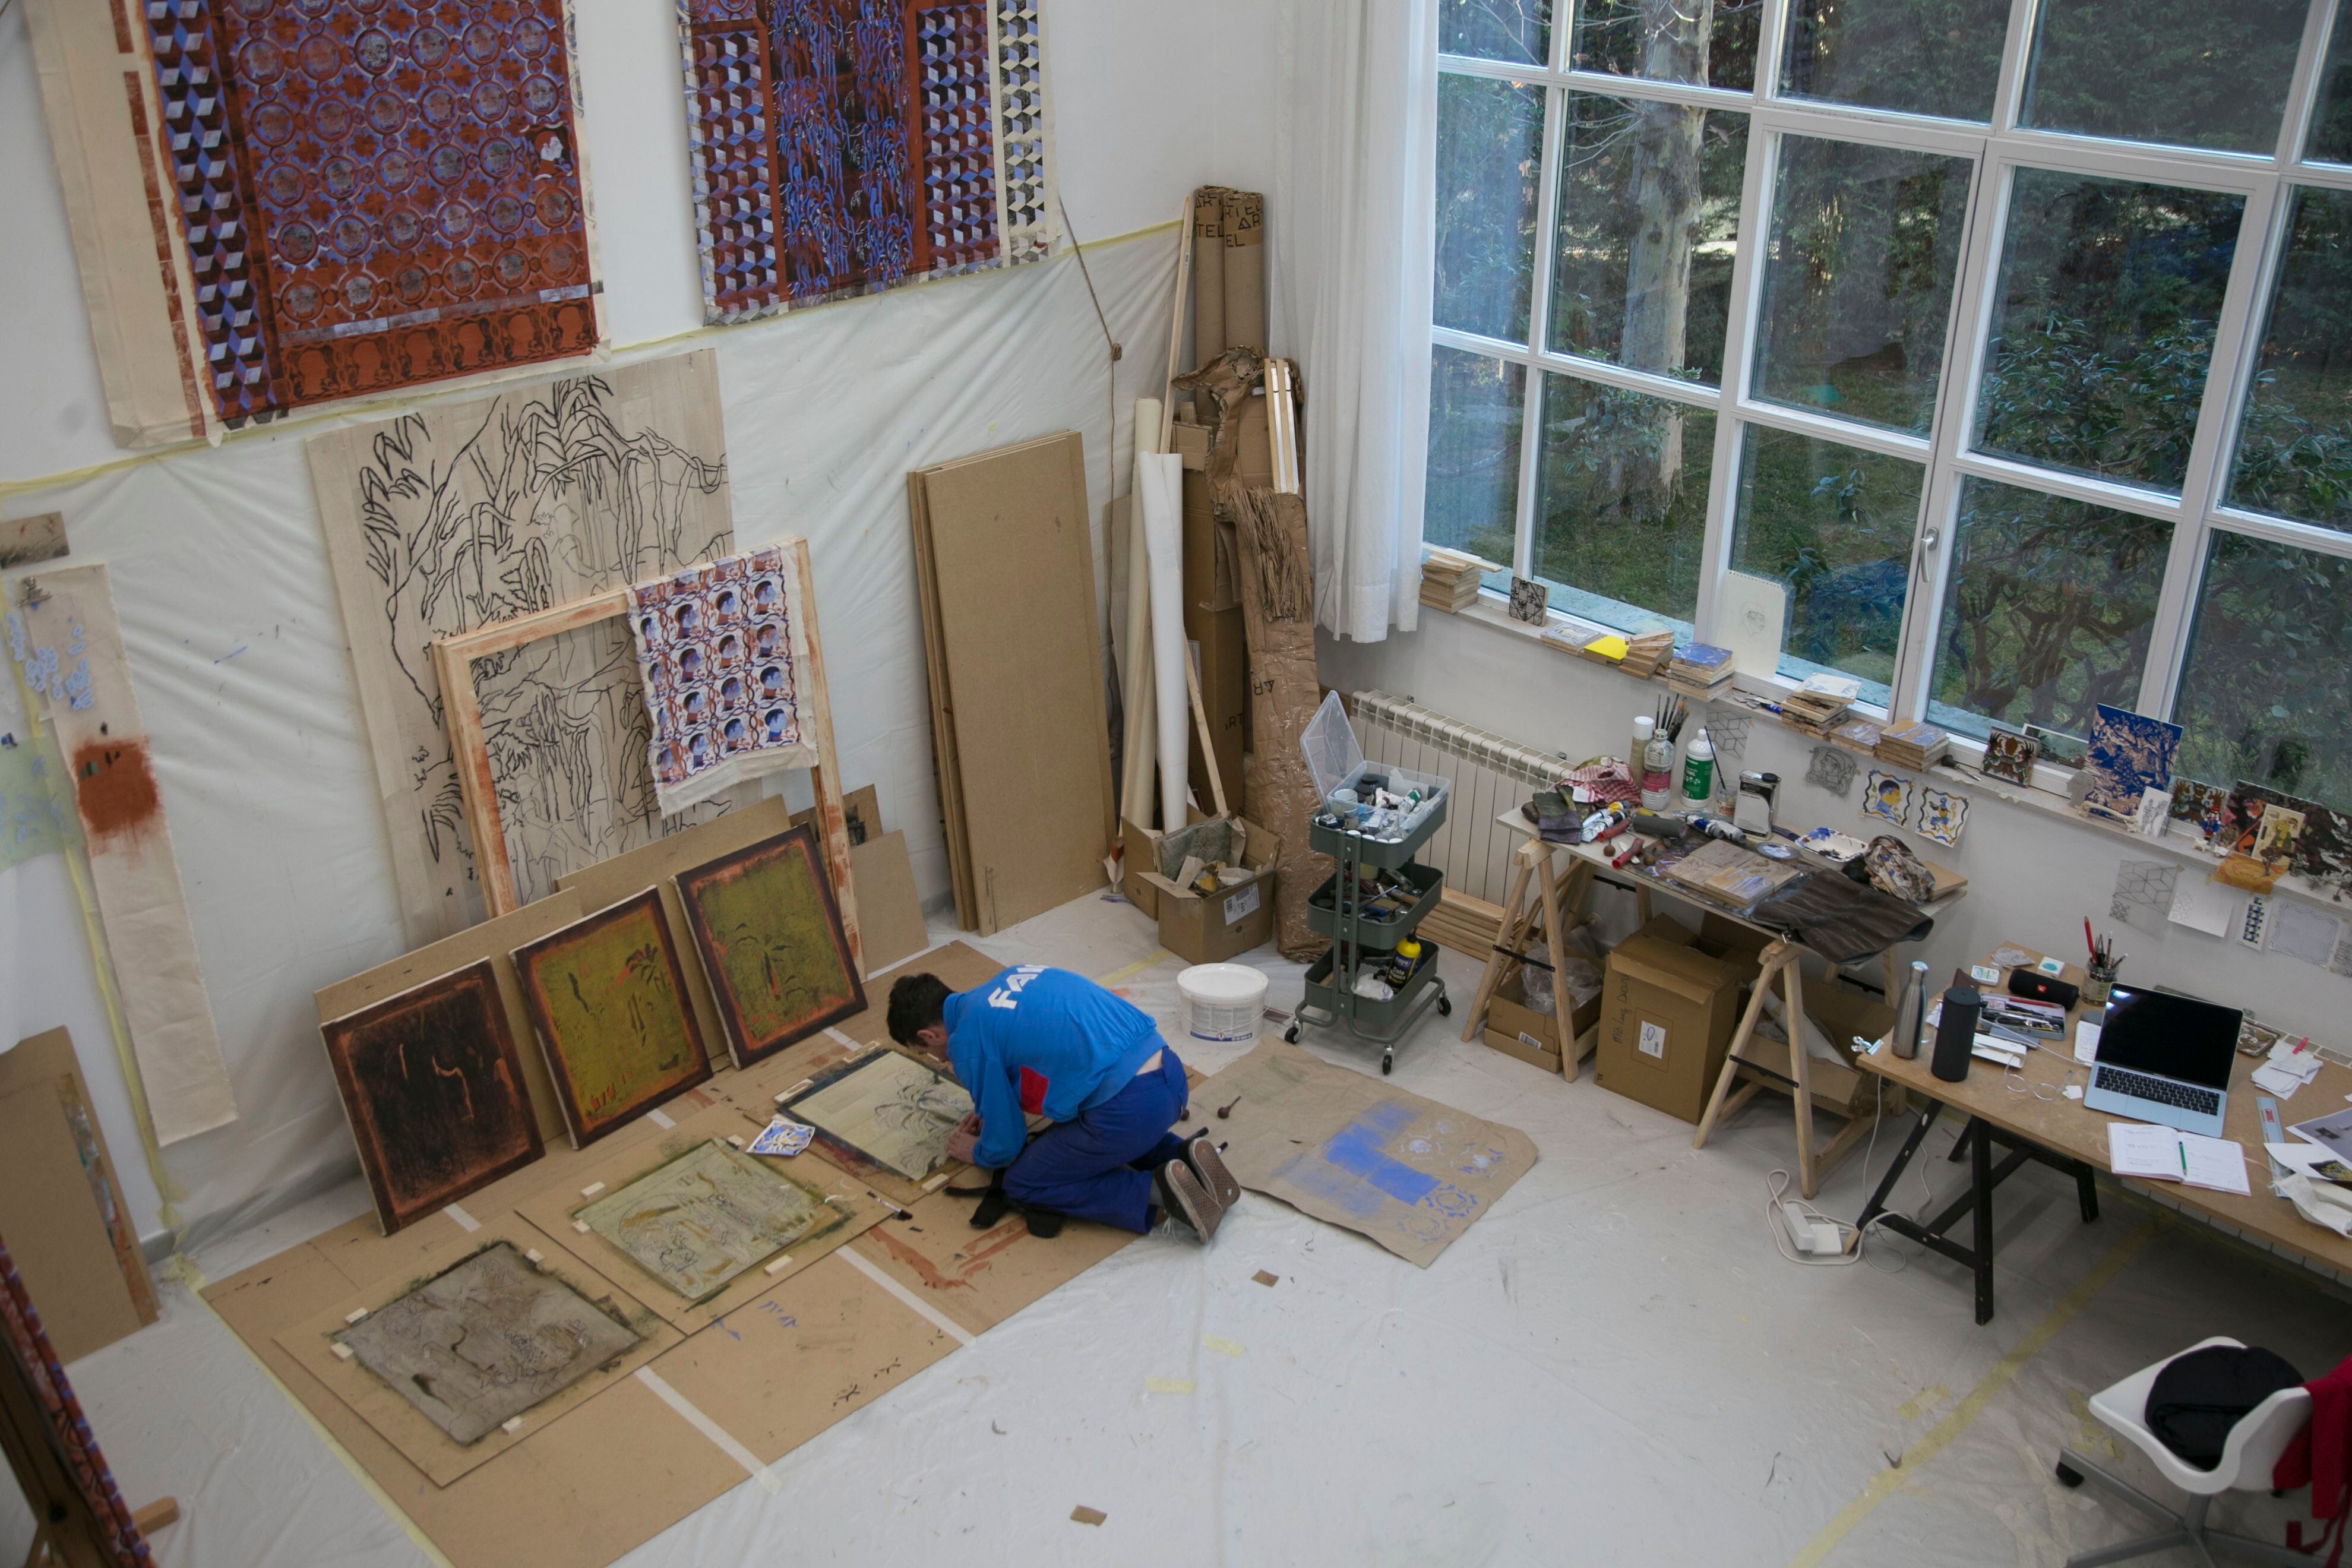 El artista plástico Aranaud Rochard trabaja en su atelier.